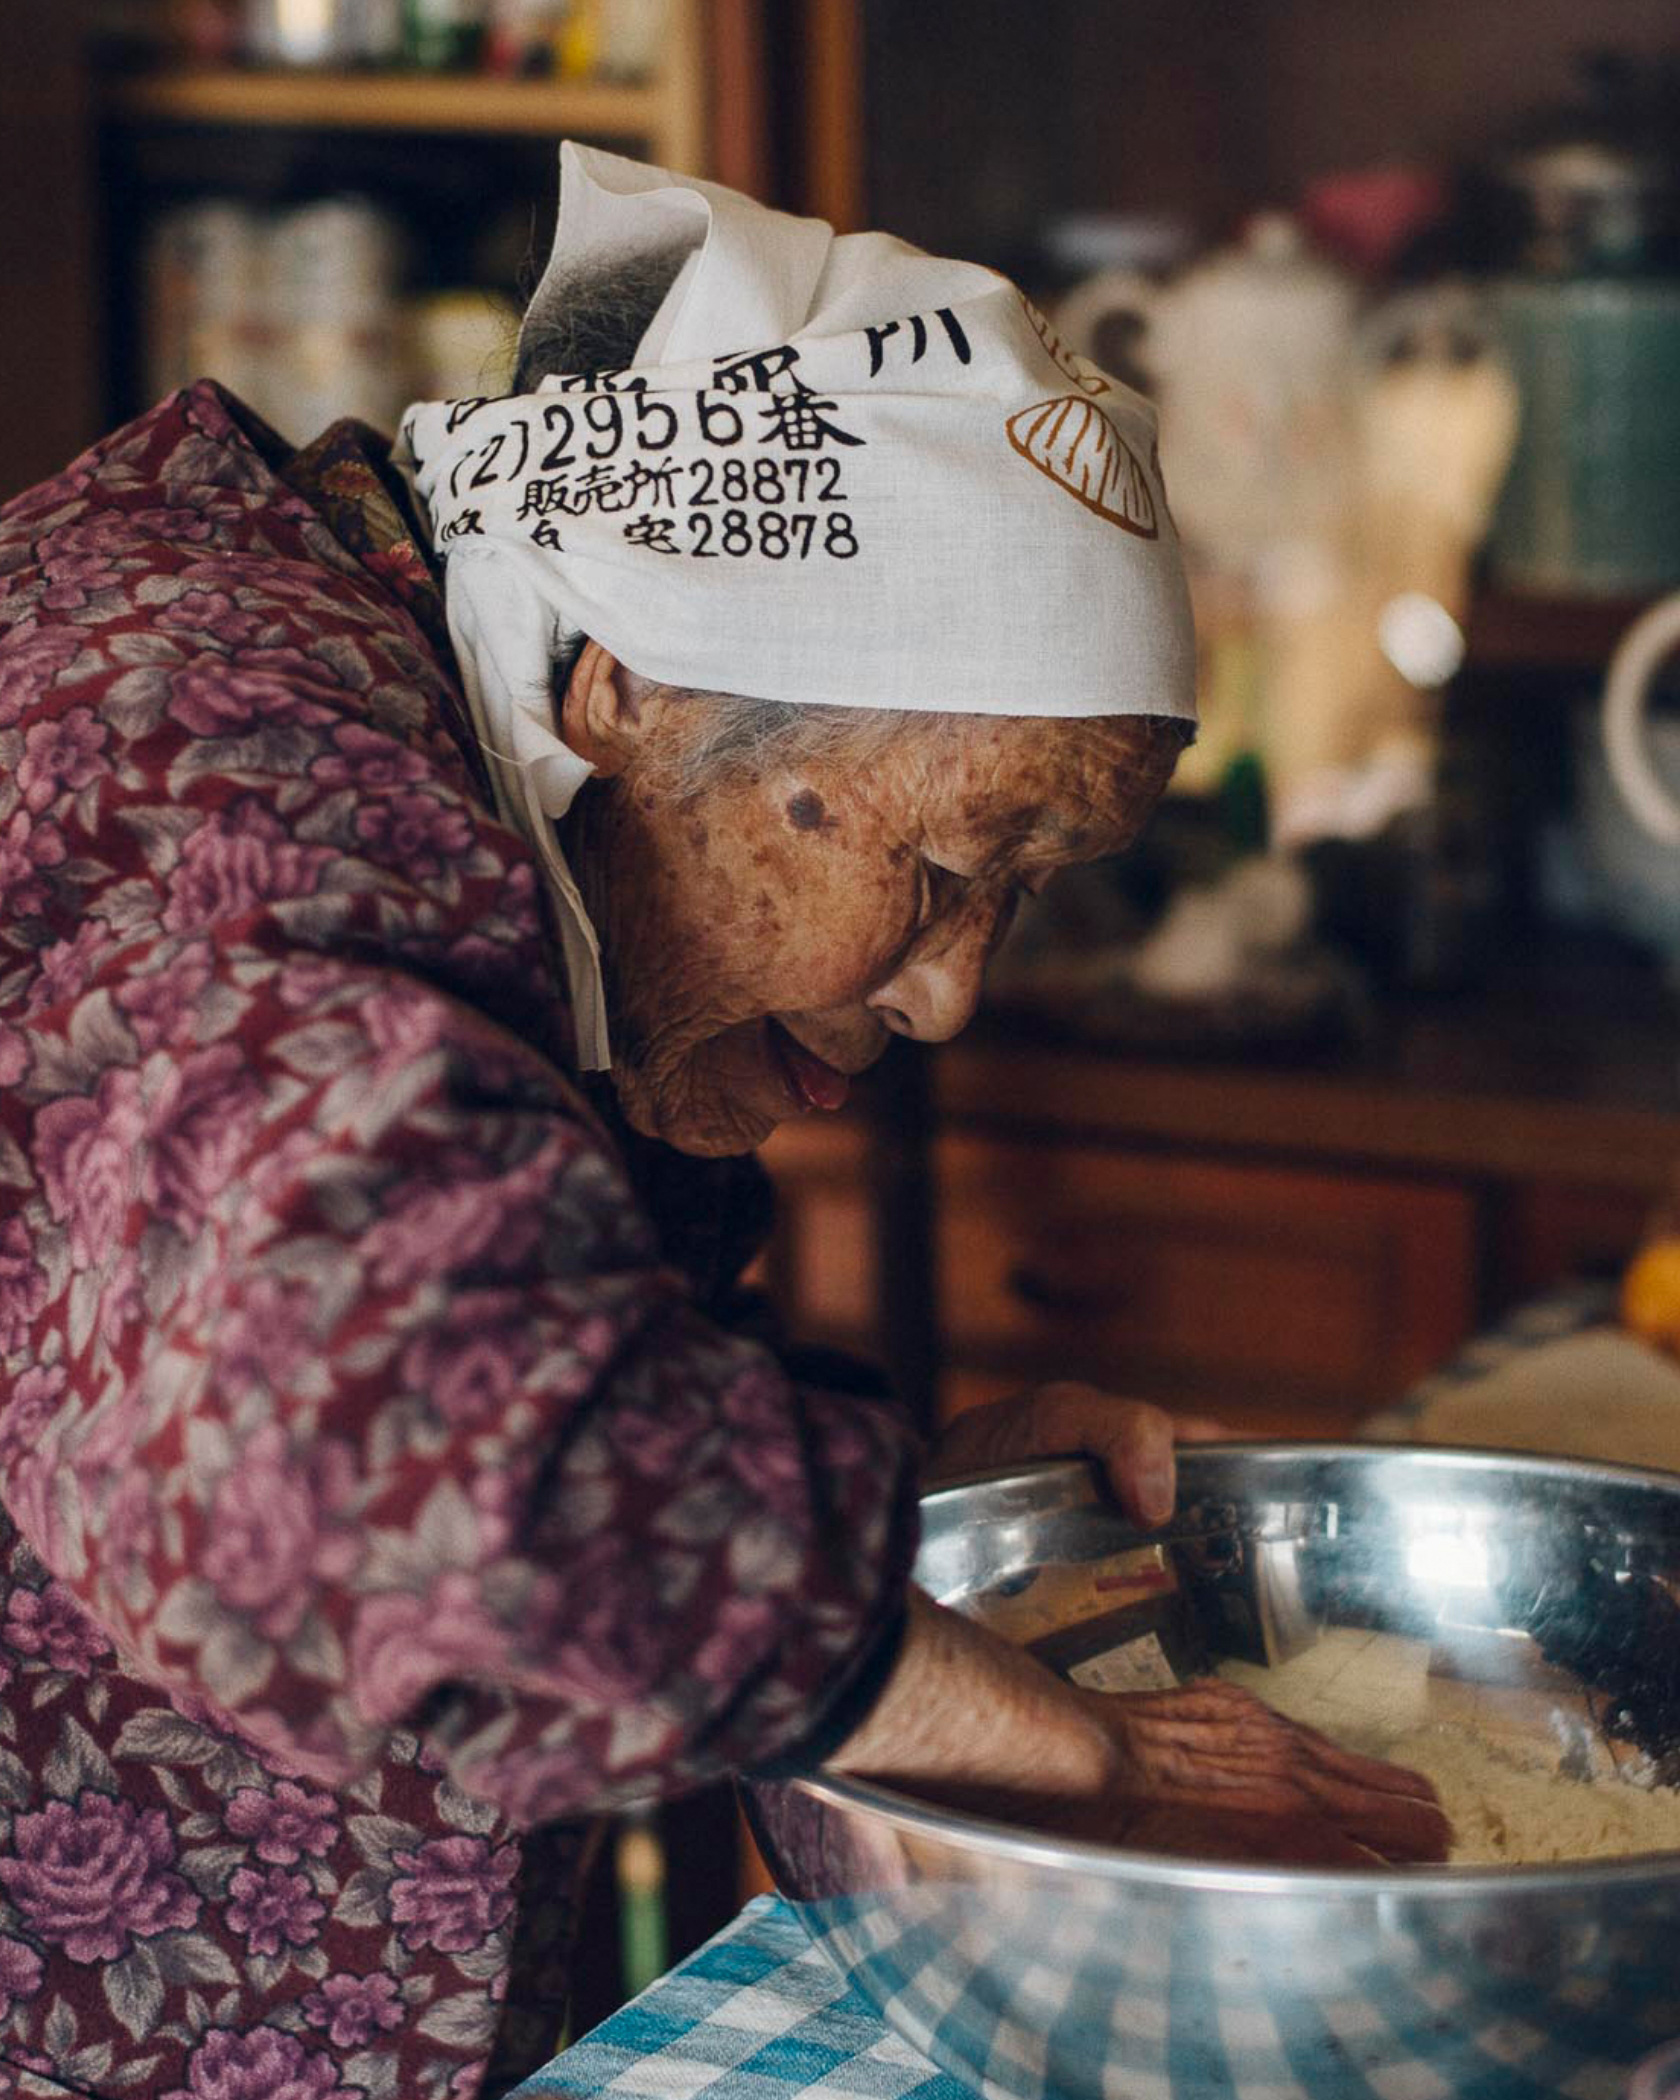 Grandma's Recipes / Archive project